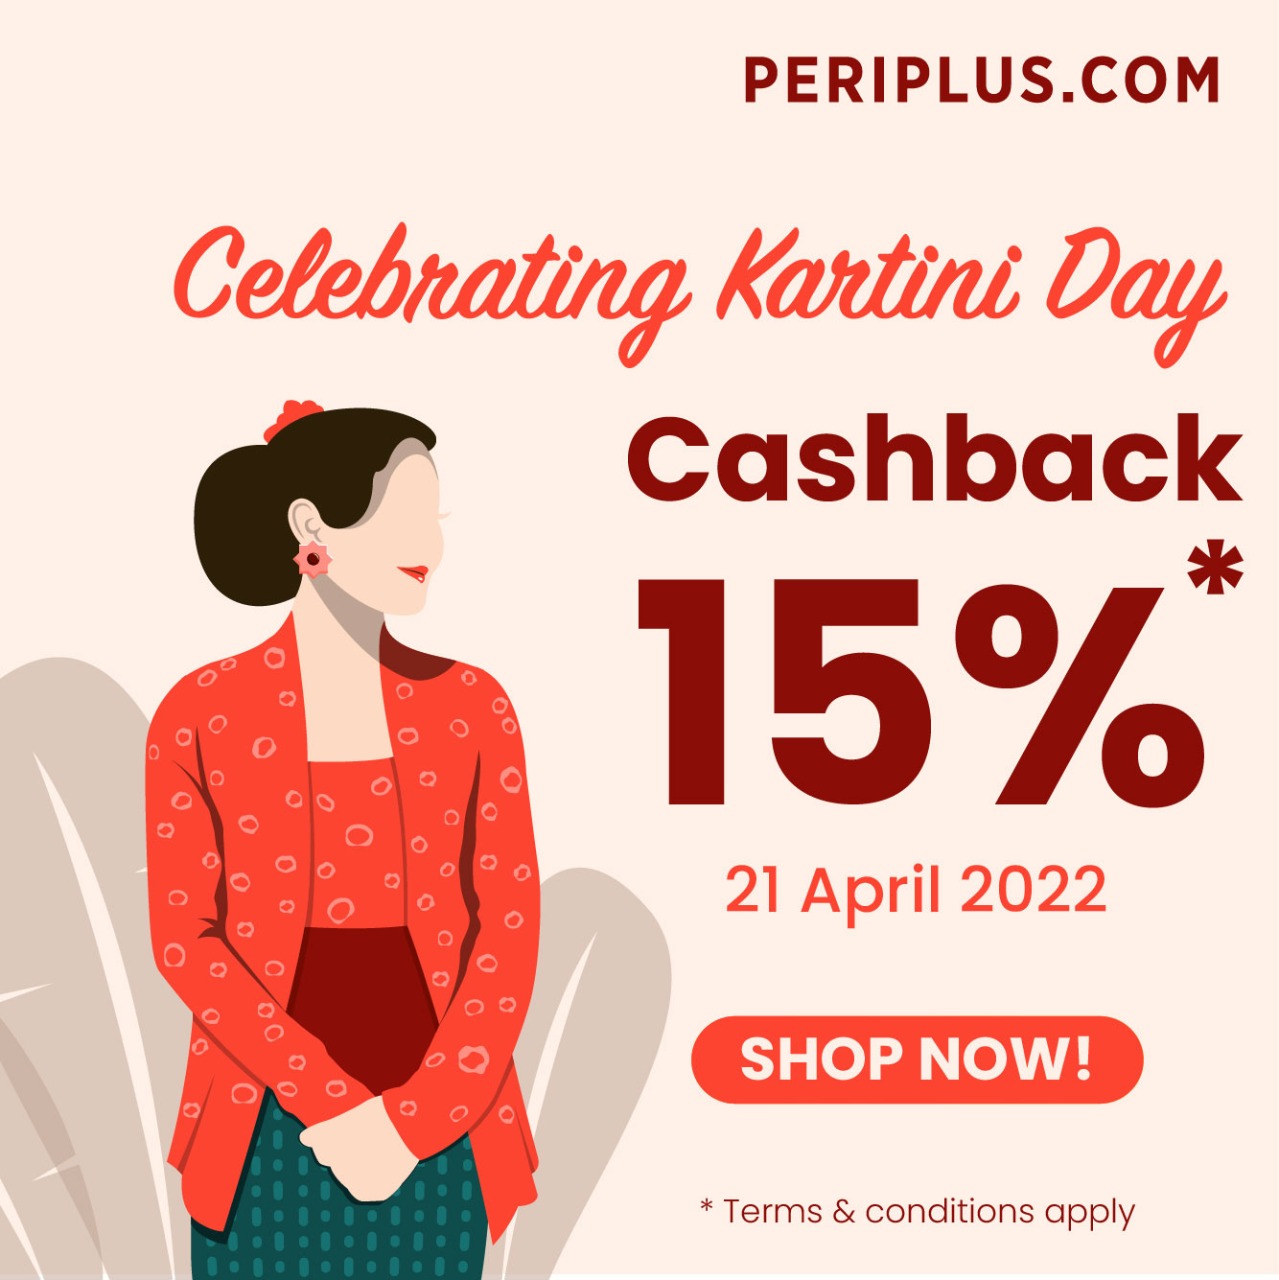 Promo PERIPLUS Celebrating Kartini Day - Dapatkan Cashback 15% berlaku hanya 1 hari, tanggal 21 April 2022